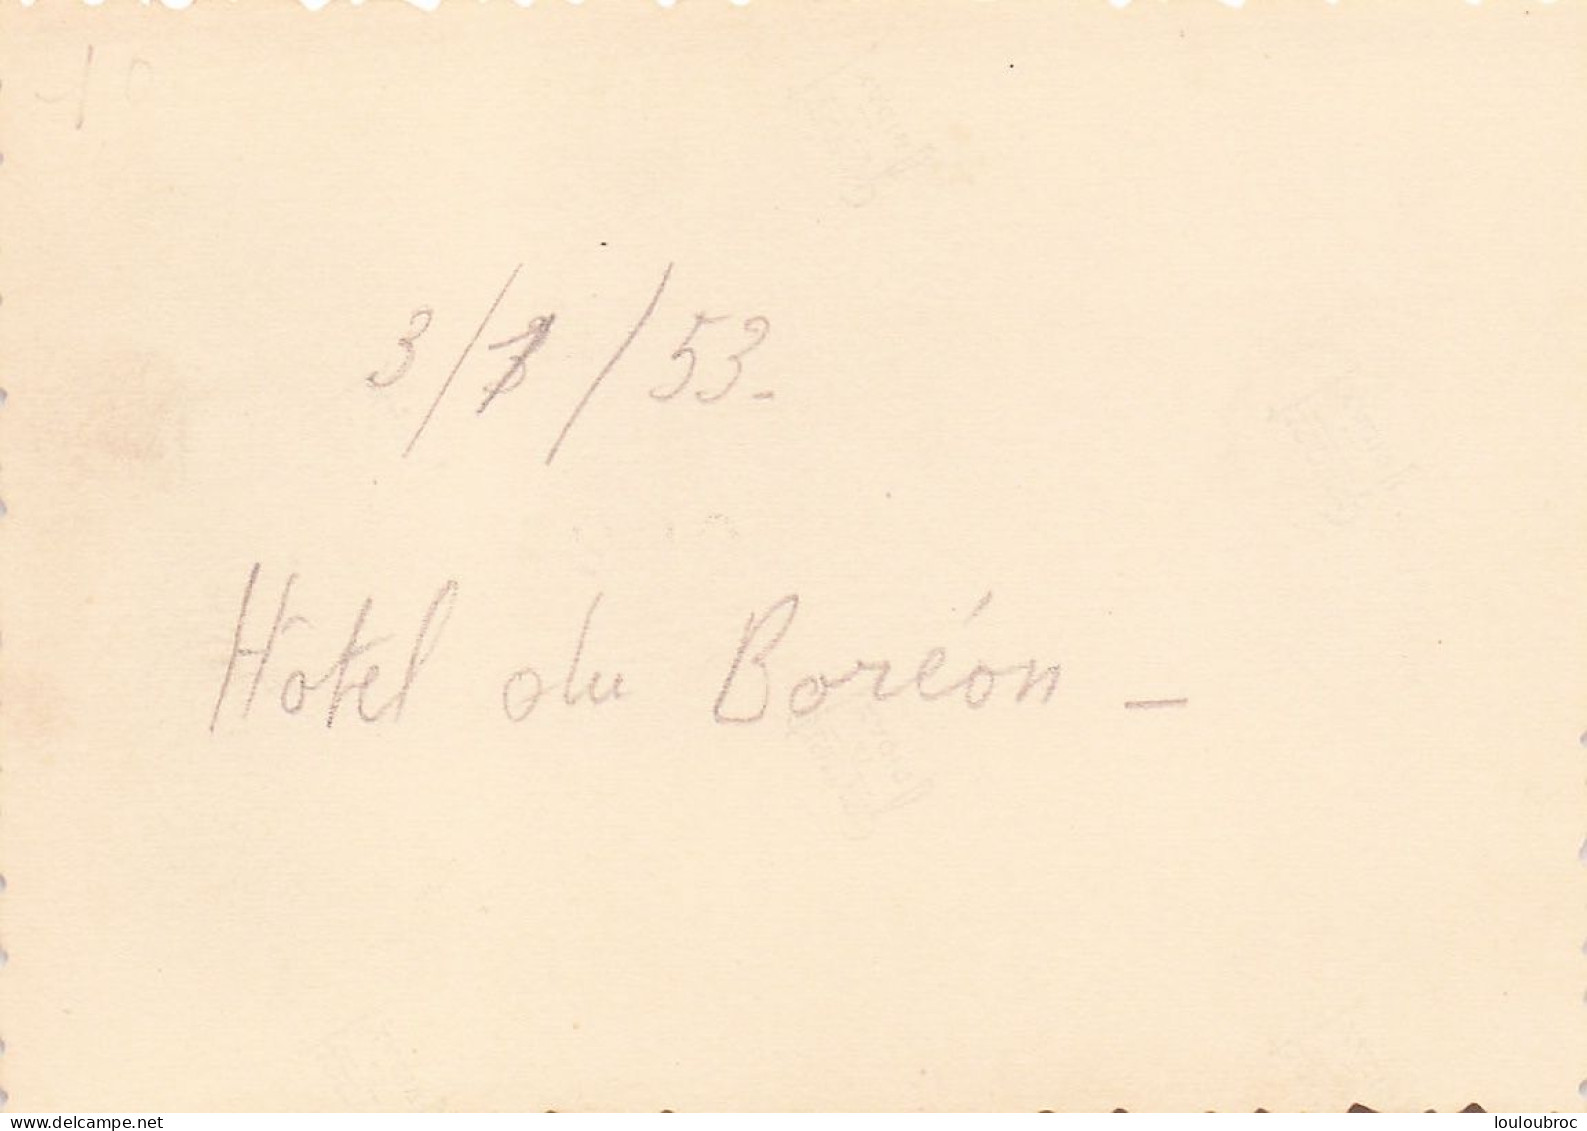 ALPES HOTEL DU BOREON 1953  ALPINISME  PHOTO ORIGINALE  10 X 7 CM - Places